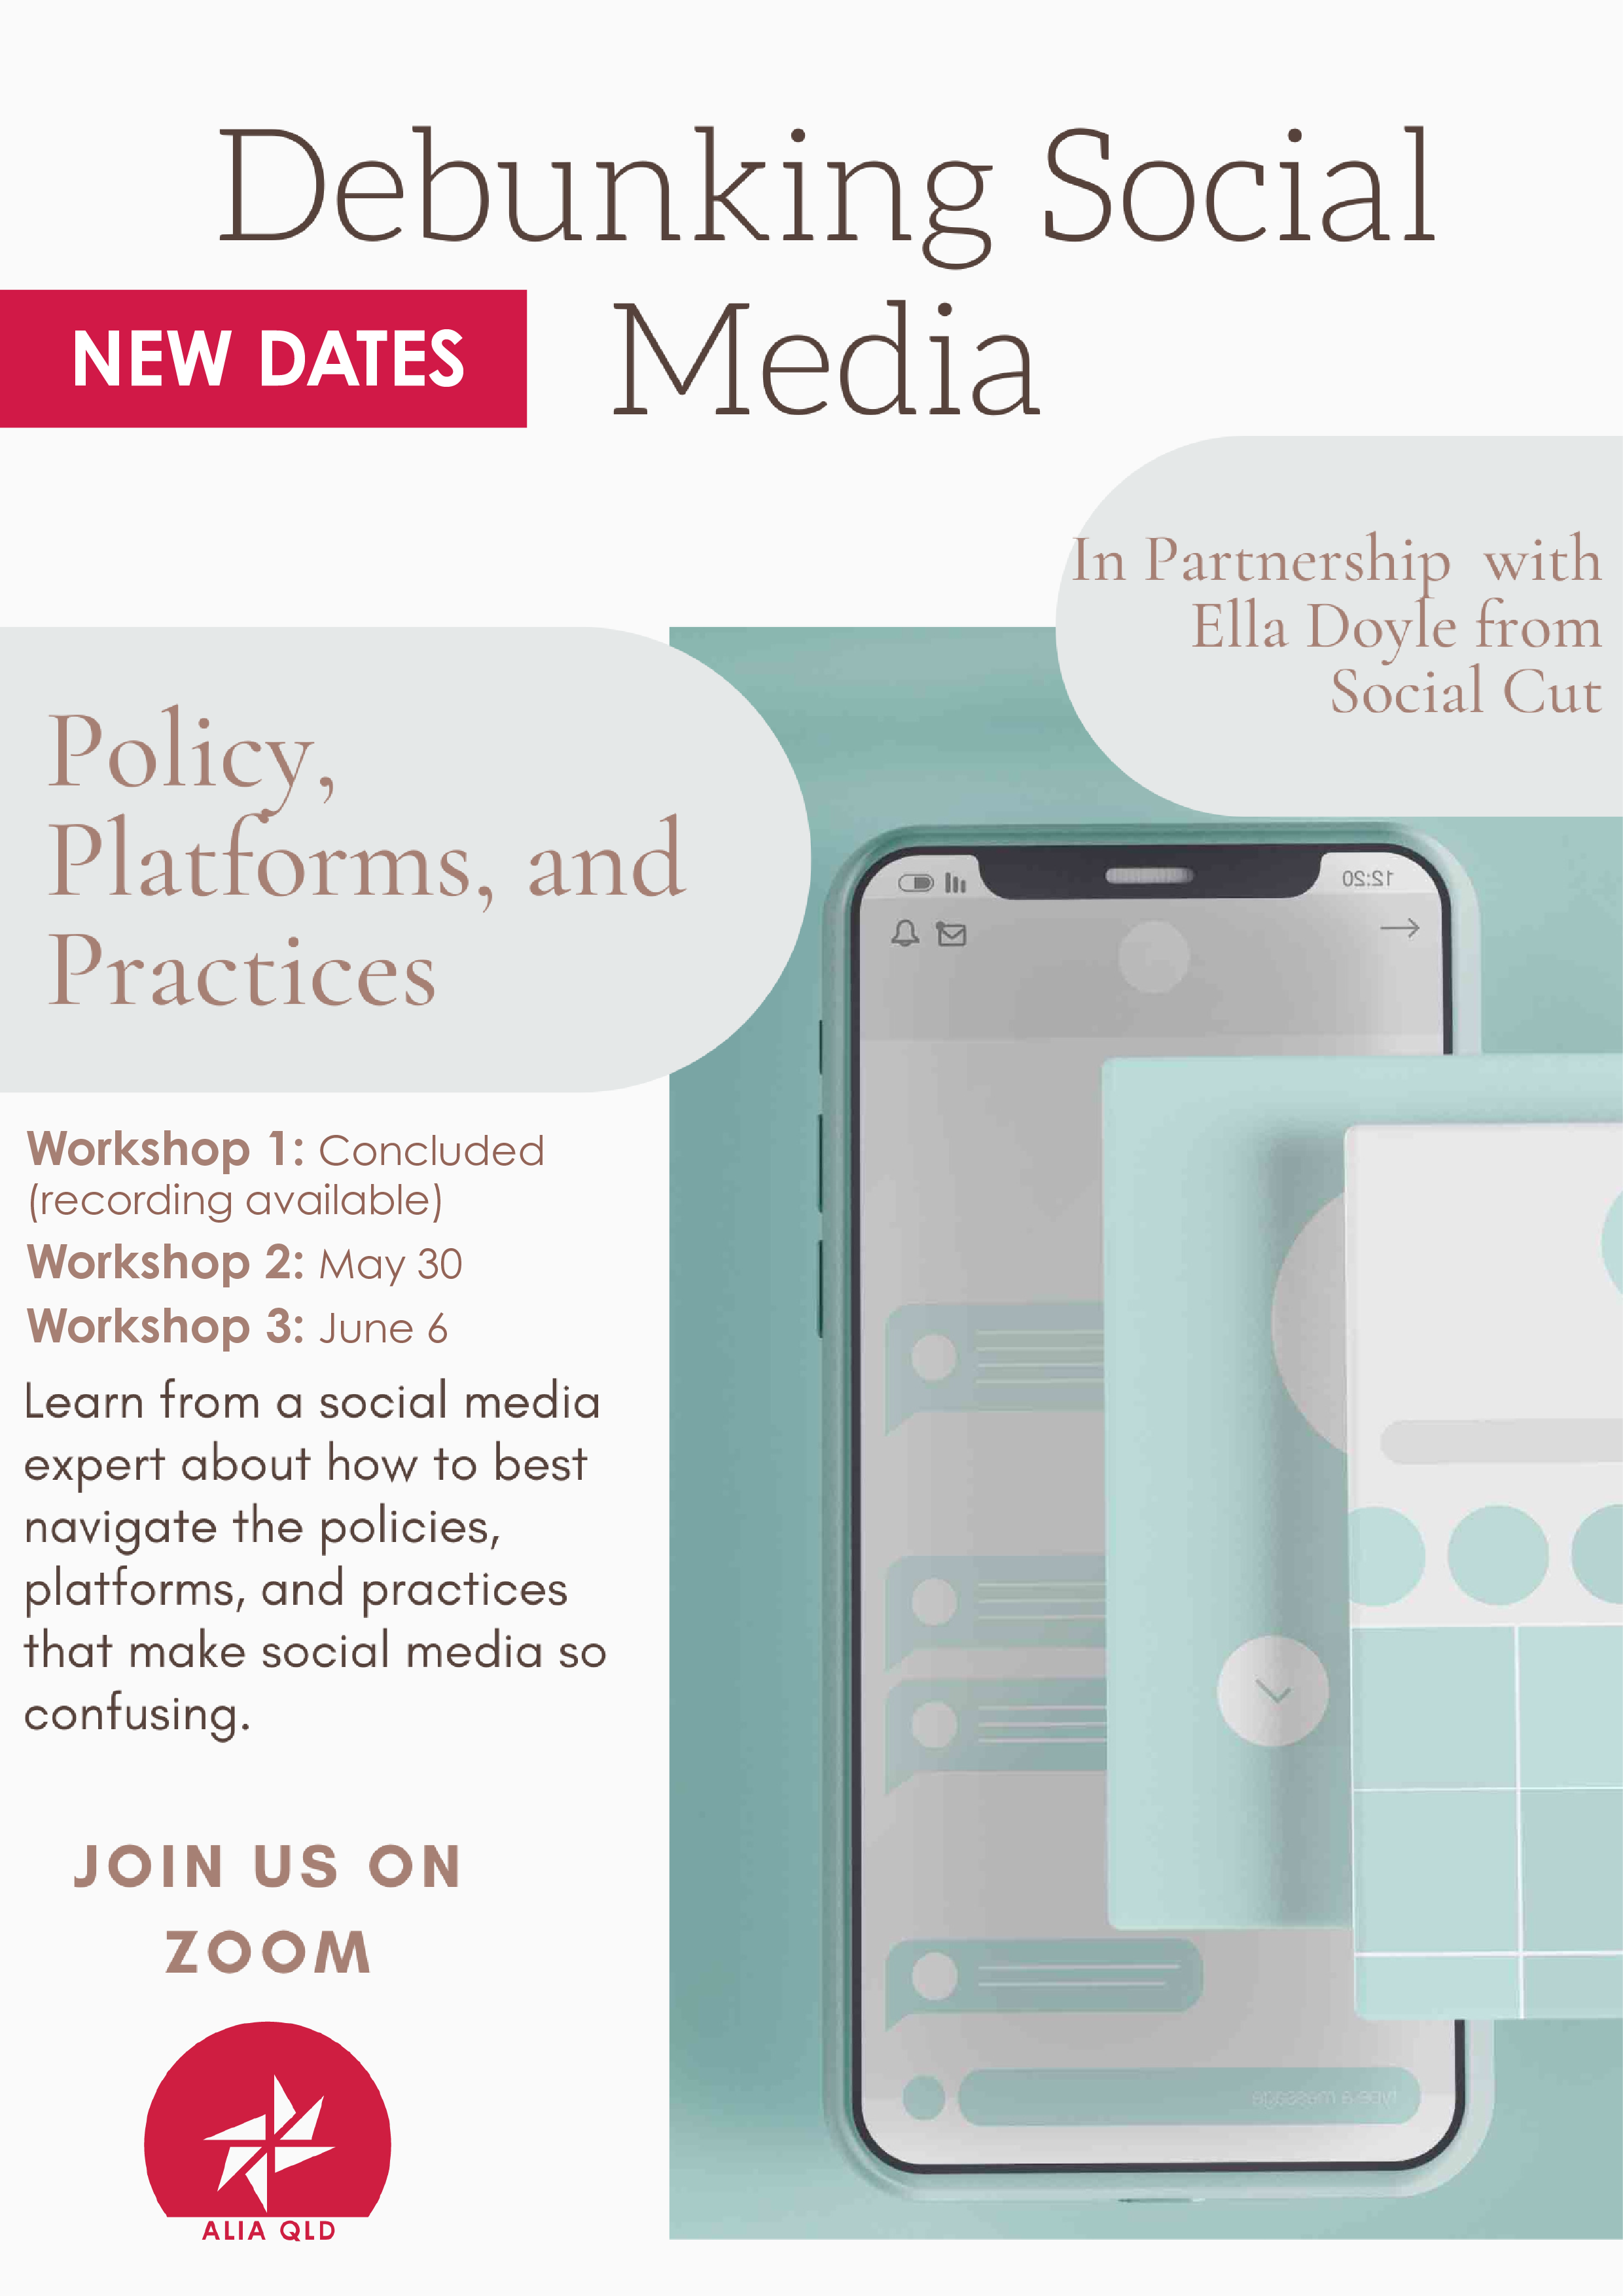 Debunking Social Media: Platforms, Policies & Practices